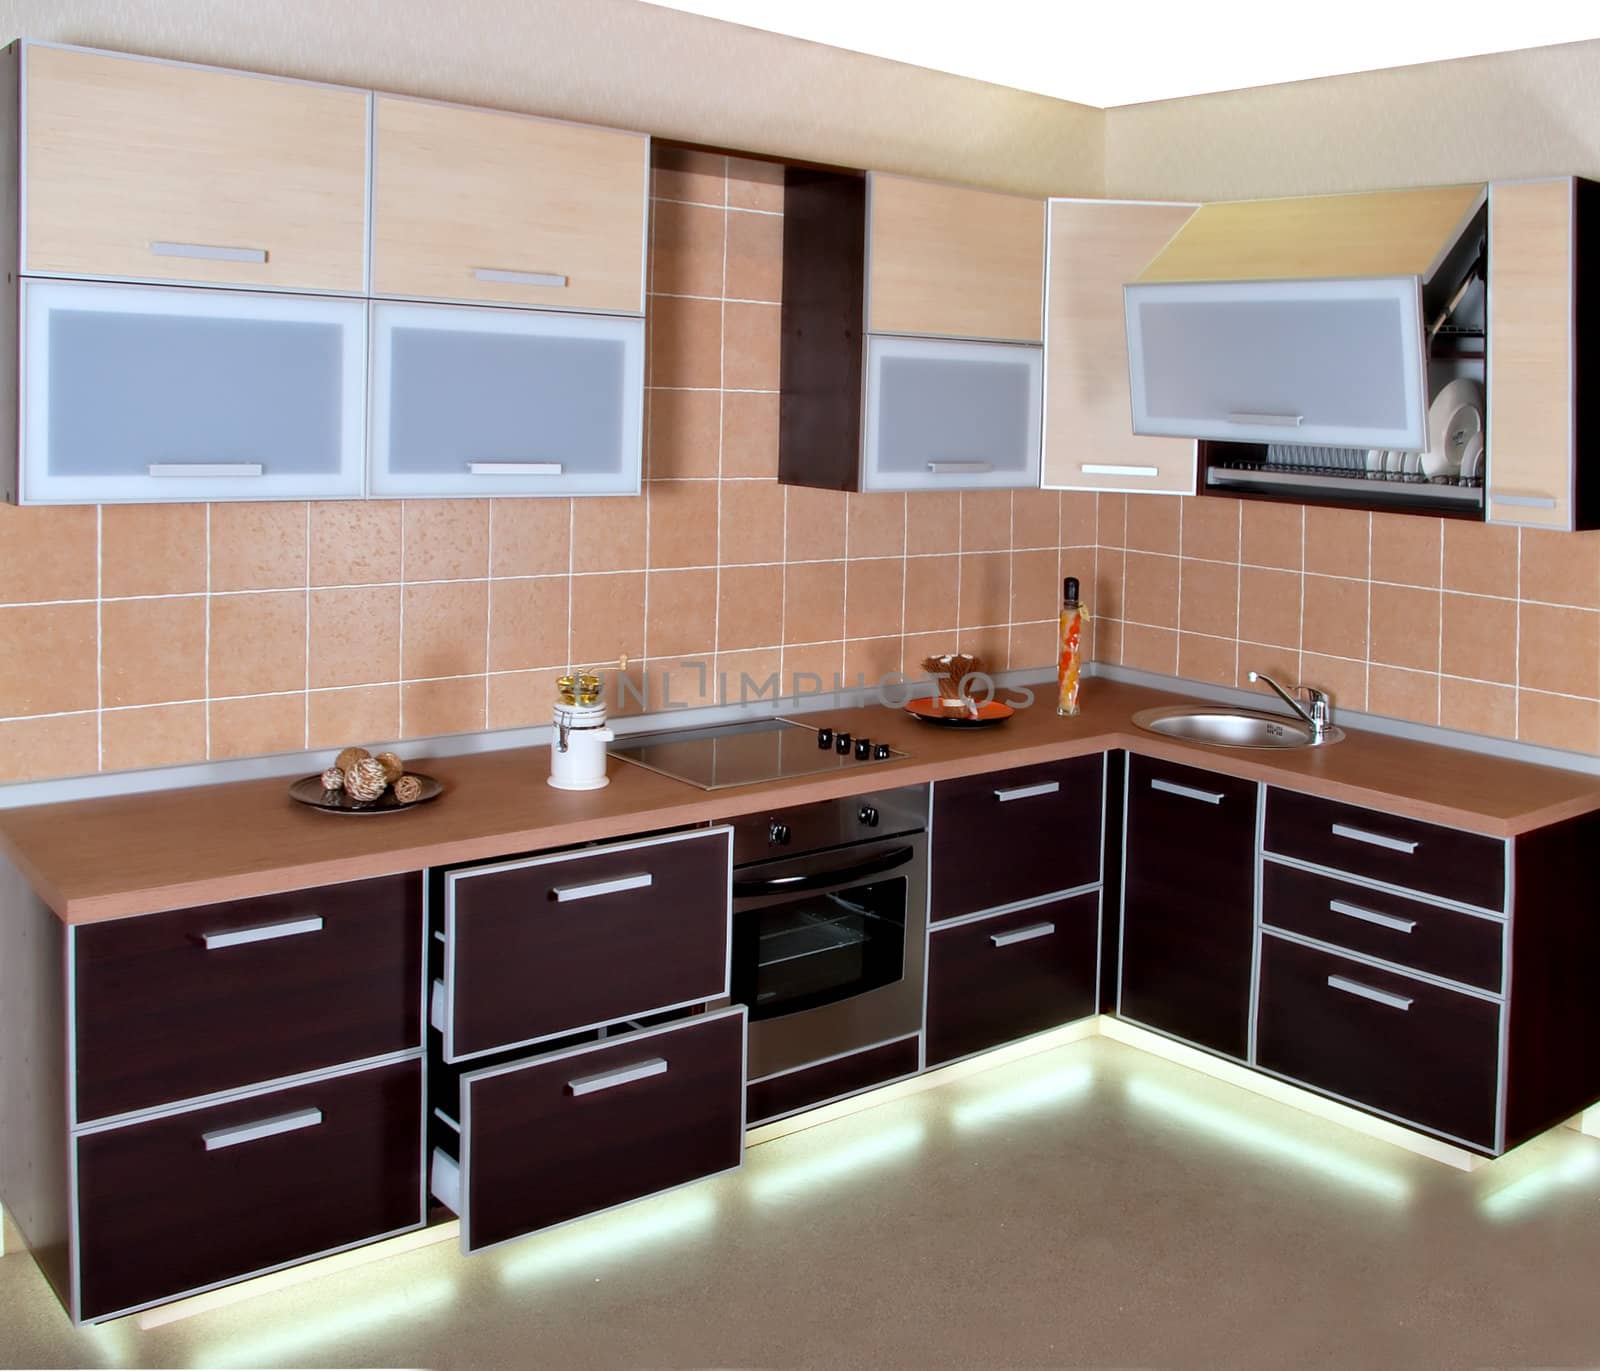 Modern kitchen interior by palomnik